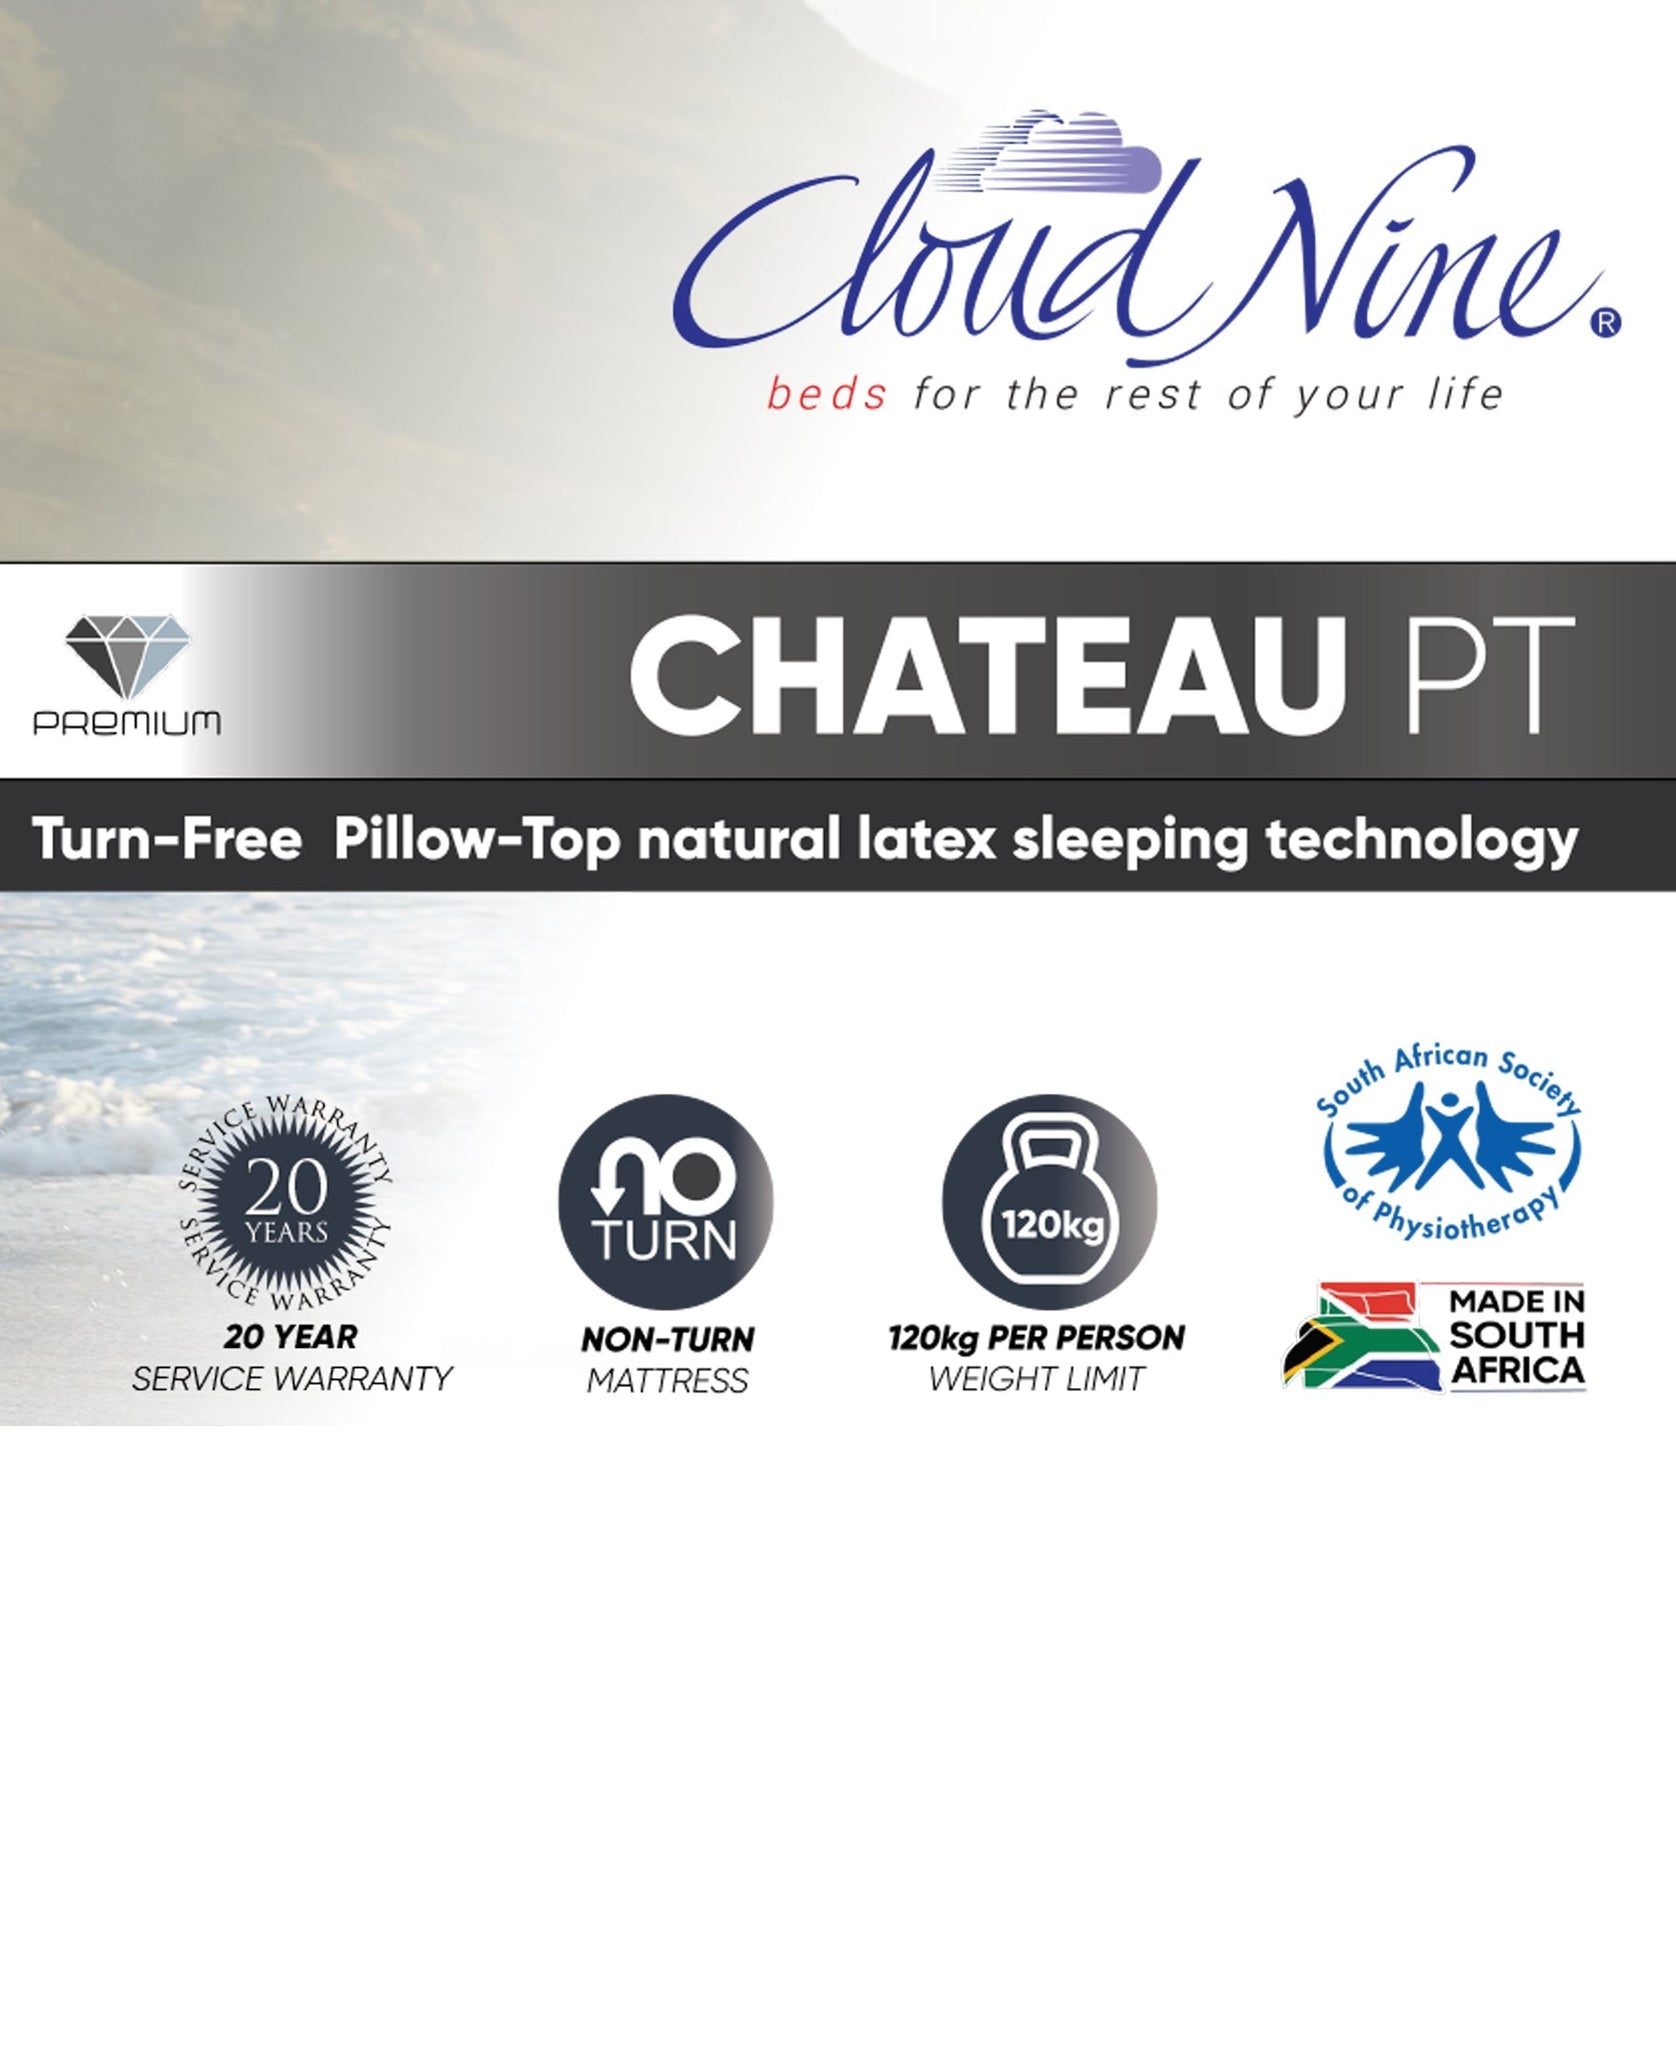 Cloud Nine Chateau PT Bed Double